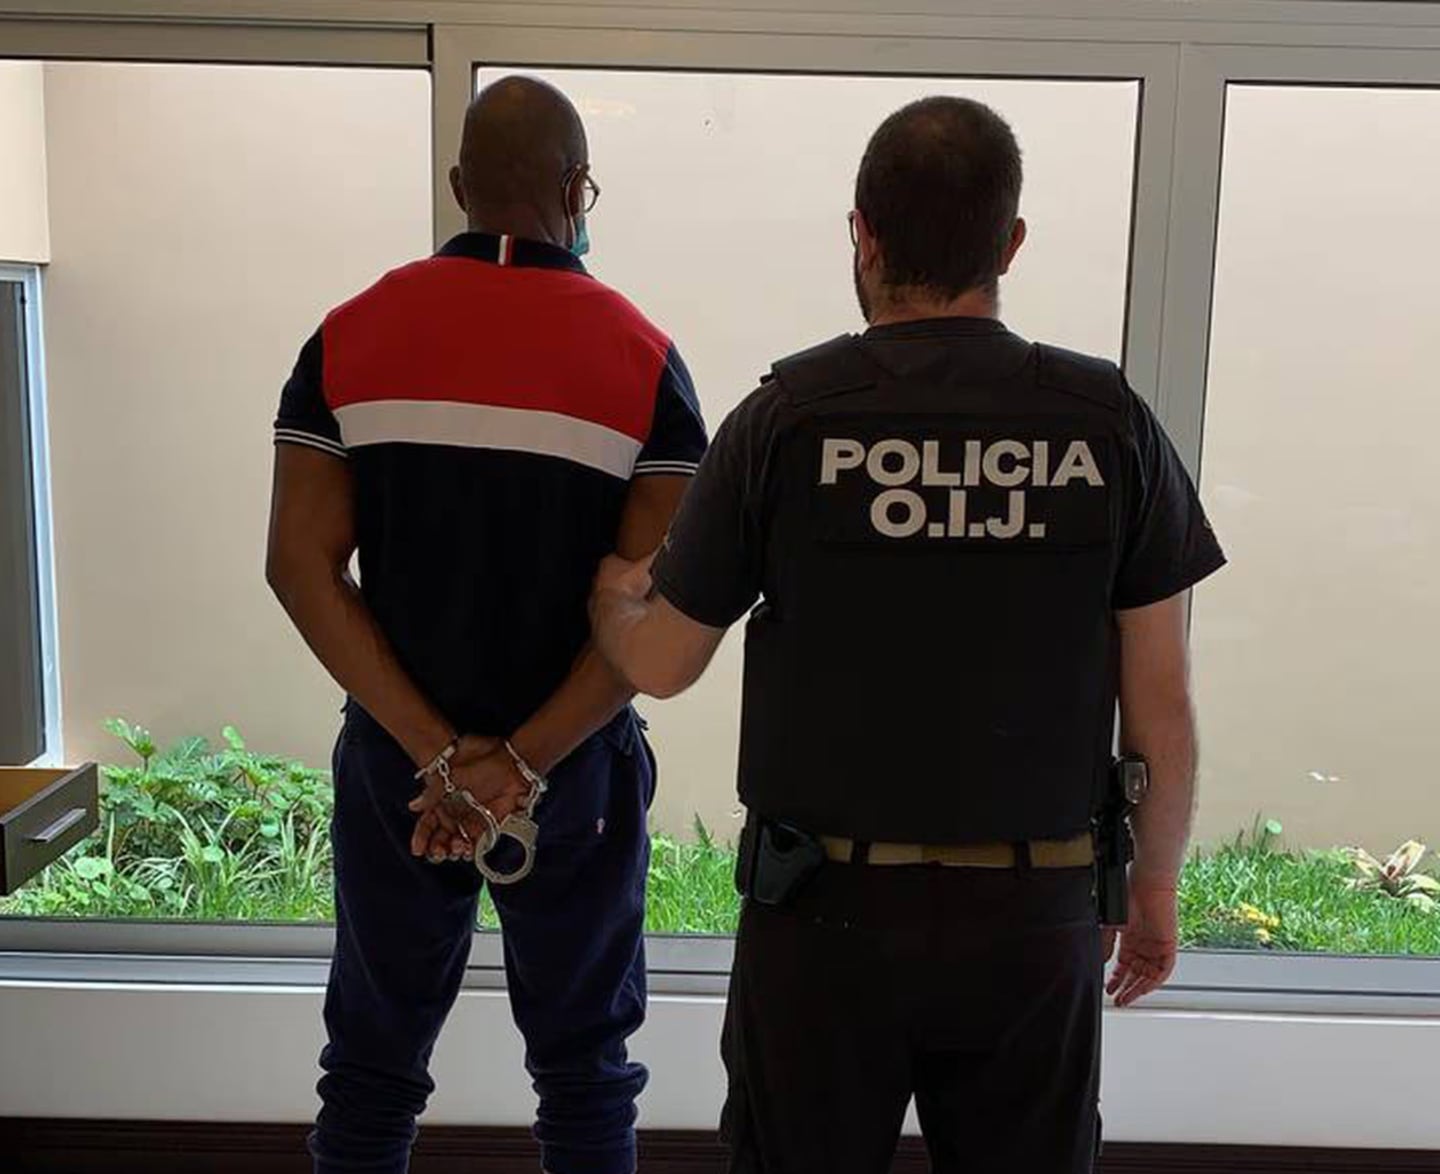 El 25 de mayo del 2021, OIJ decomisó dinero en efectivo y otras evidencias durante 40 allanamientos a propiedades pertenecientes a una banda narco que enviaba droga a Europa en contenedores. Foto: OIJ para LN.